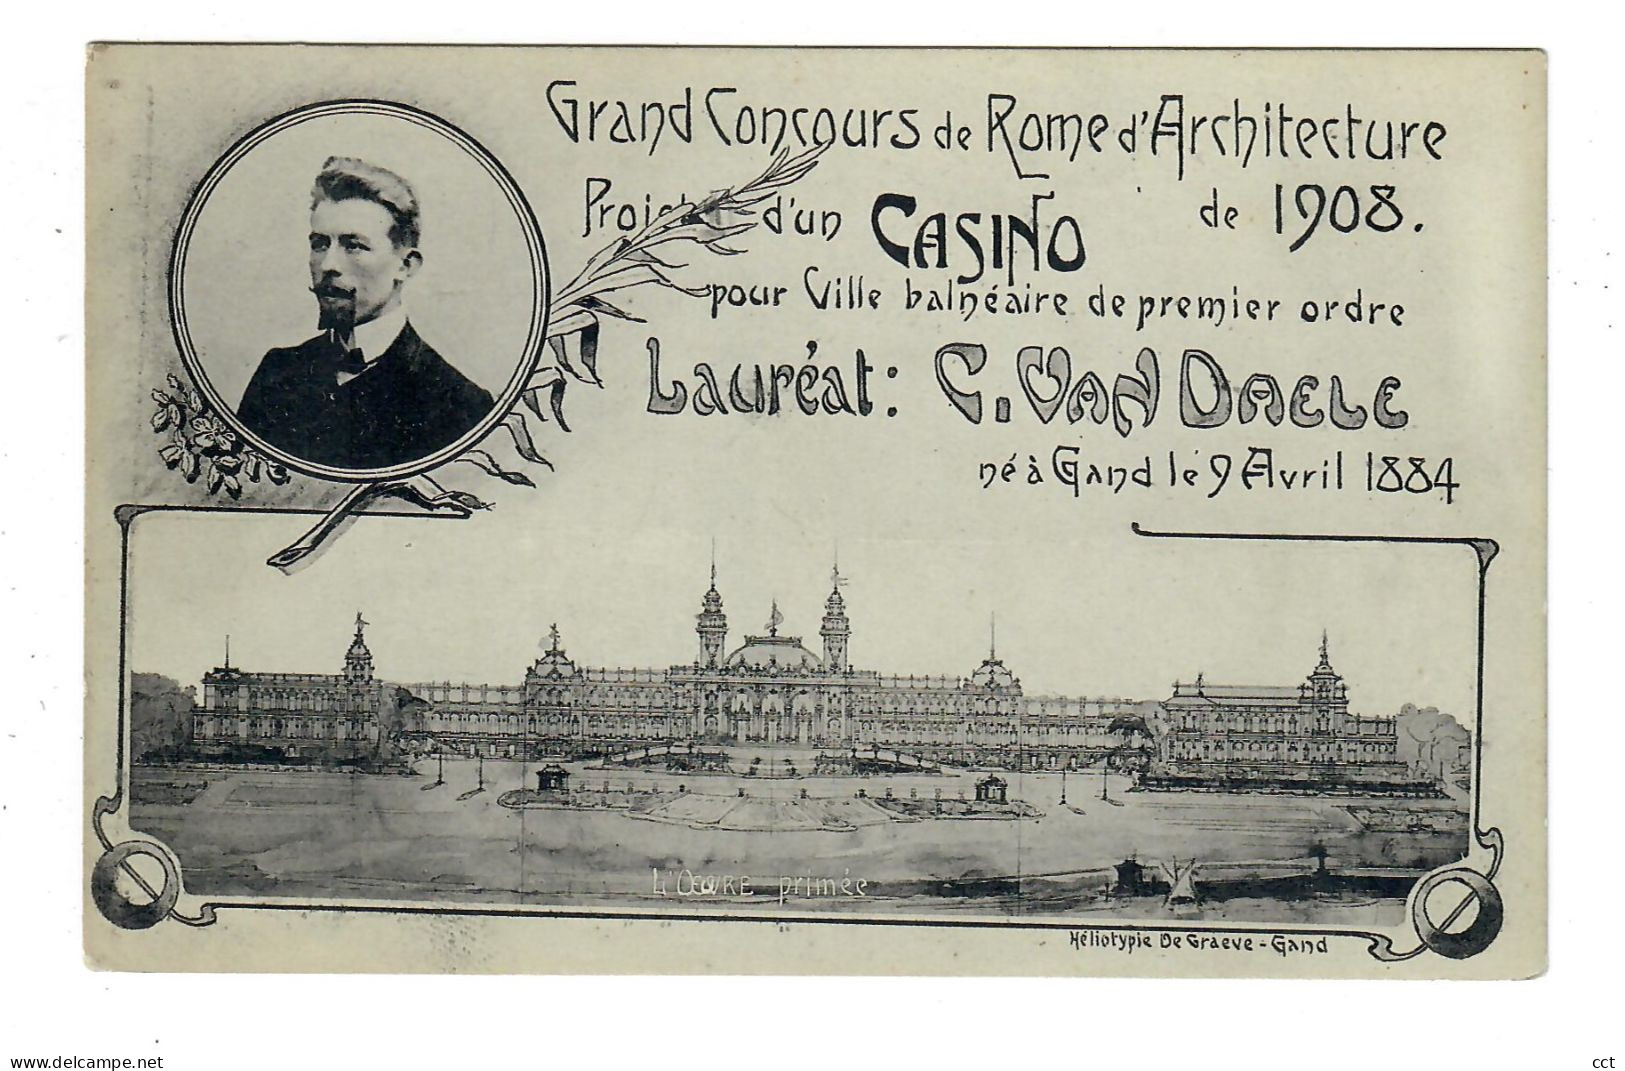 Gand Gent   Grand Concours De Rome D'Architecture De 1908  Lauréat C Van Daele  Né à Gand Le 9 Avril 1884 - Gent